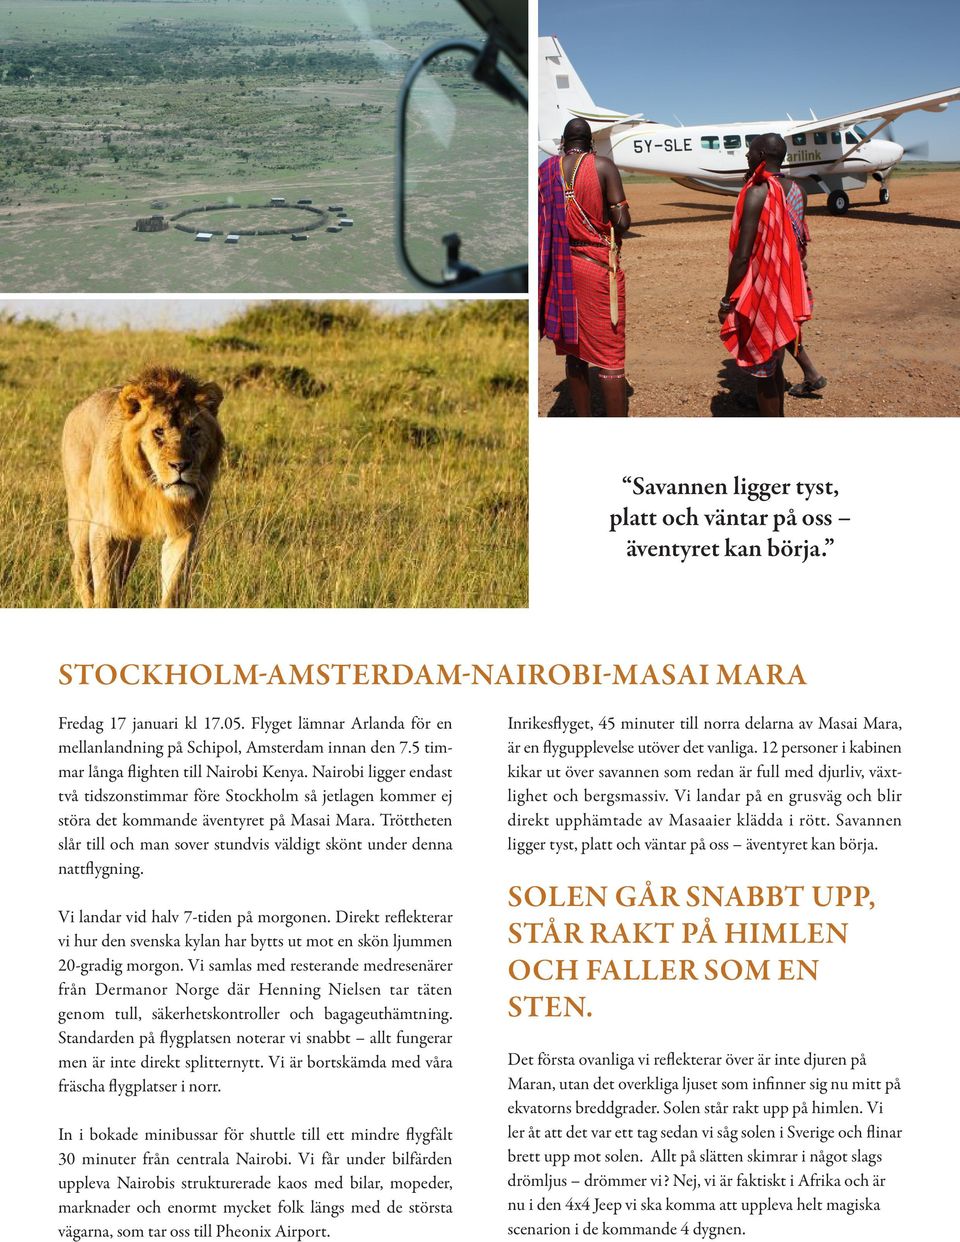 Nairobi ligger endast två tidszonstimmar före Stockholm så jetlagen kommer ej störa det kommande äventyret på Masai Mara.